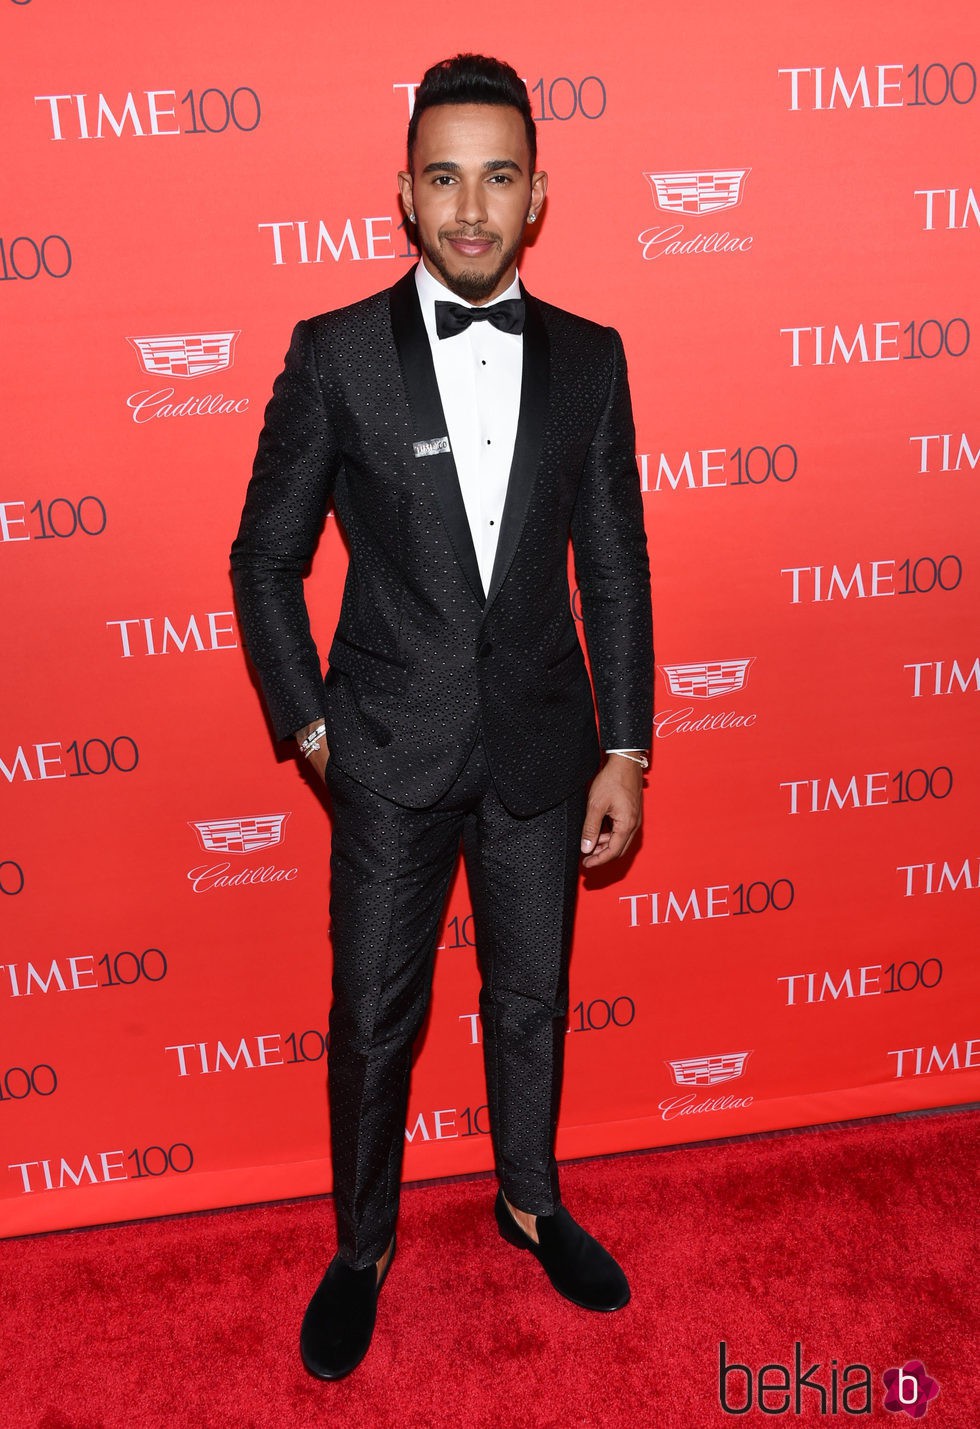 Lewis Hamilton en la fiesta organizada por la revista Time en Nueva York